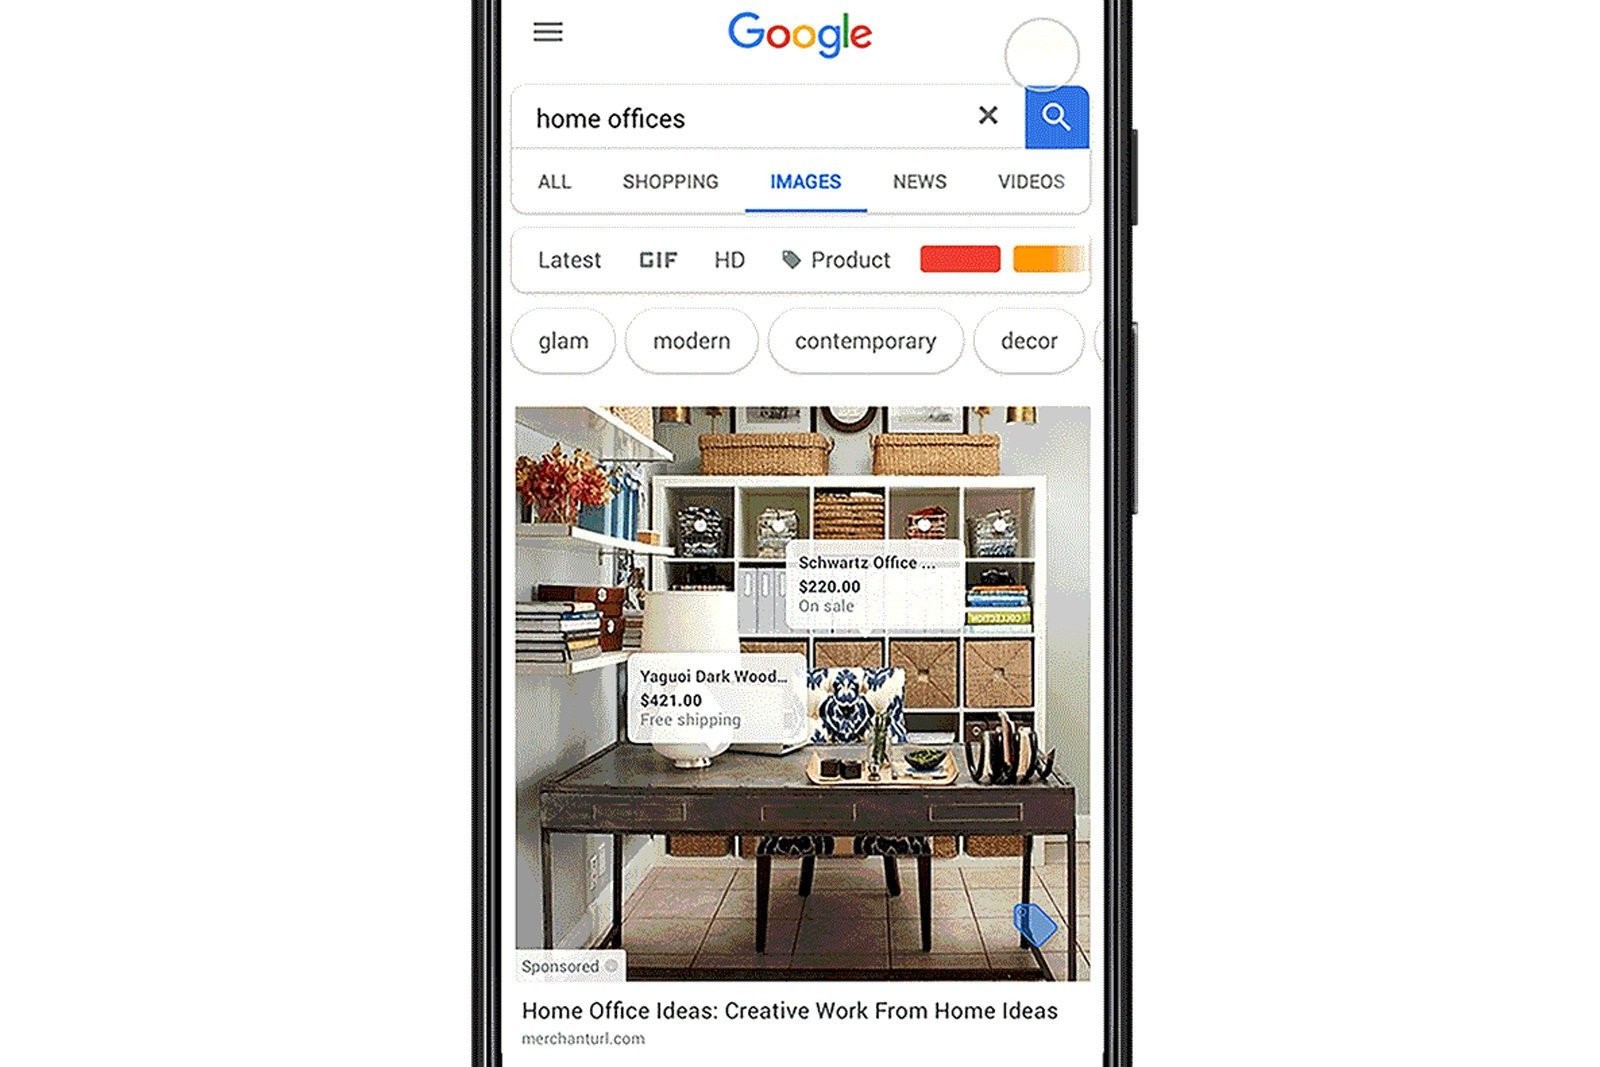 Η Google δοκιμάζει τη δυνατότητα αγοράς μέσα από την αναζήτηση εικονων